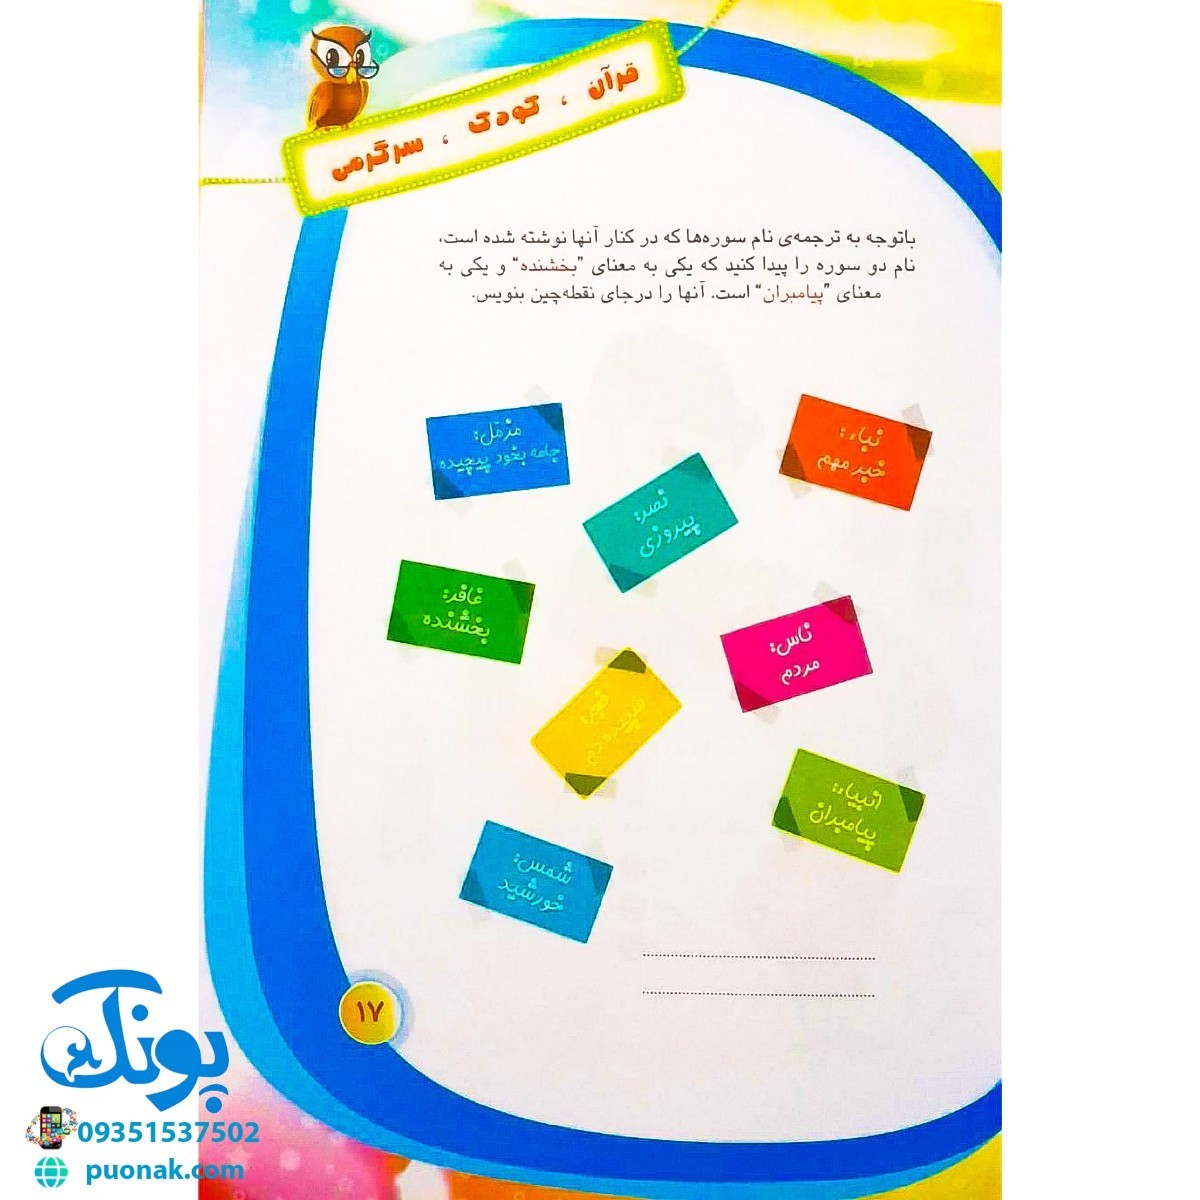 کتاب قرآن، کودک، سرگرمی ۲ (۴۰ سرگرمی ۴۰ نکته قرآنی، آشنایی با معارف قرآنی به شیوه ی سرگرمی) - محصولات آموزشی پونک